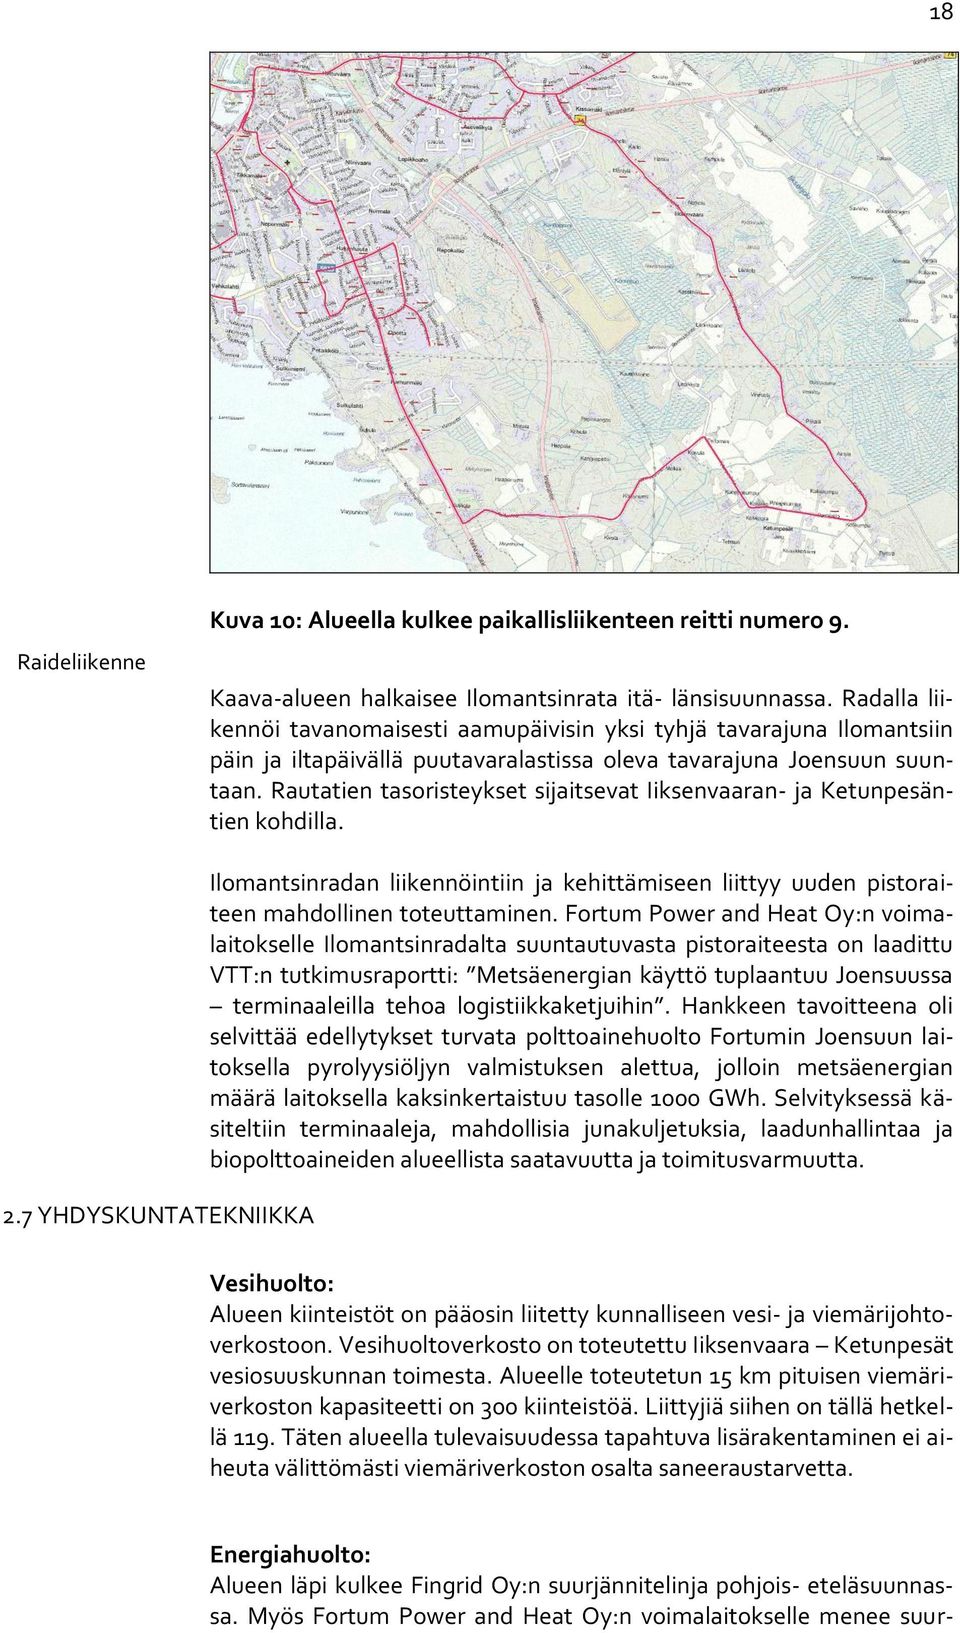 Rautatien tasoristeykset sijaitsevat Iiksenvaaran- ja Ketunpesäntien kohdilla. 2.